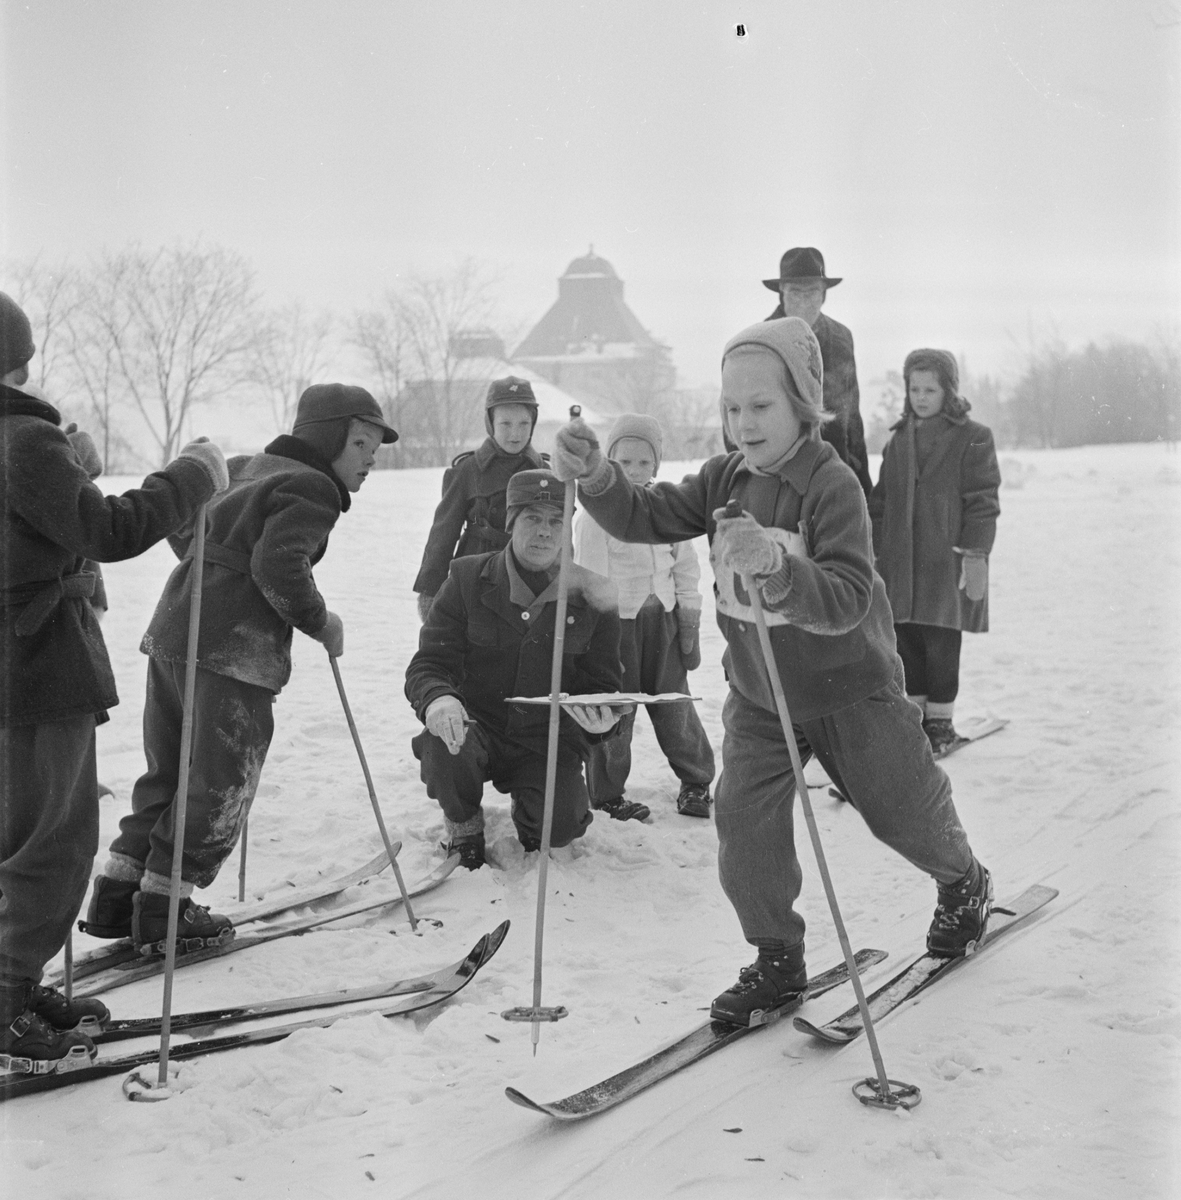 Skidtävling, Gunillasvängen, Uppsala 1954